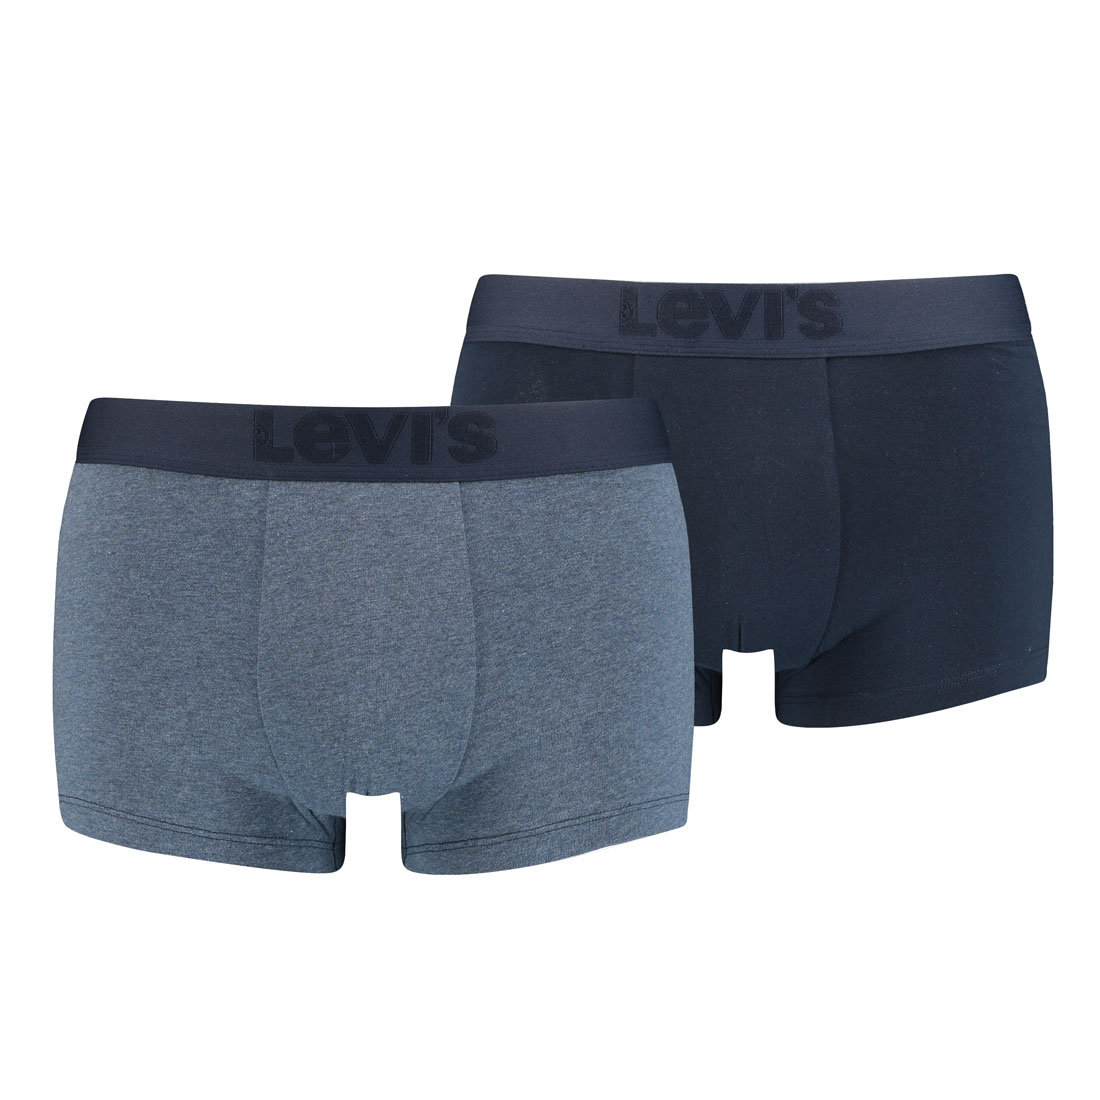 2er Pack Levis Herren Premium Trunk Boxer Shorts Unterhose Pant Unterwäsche